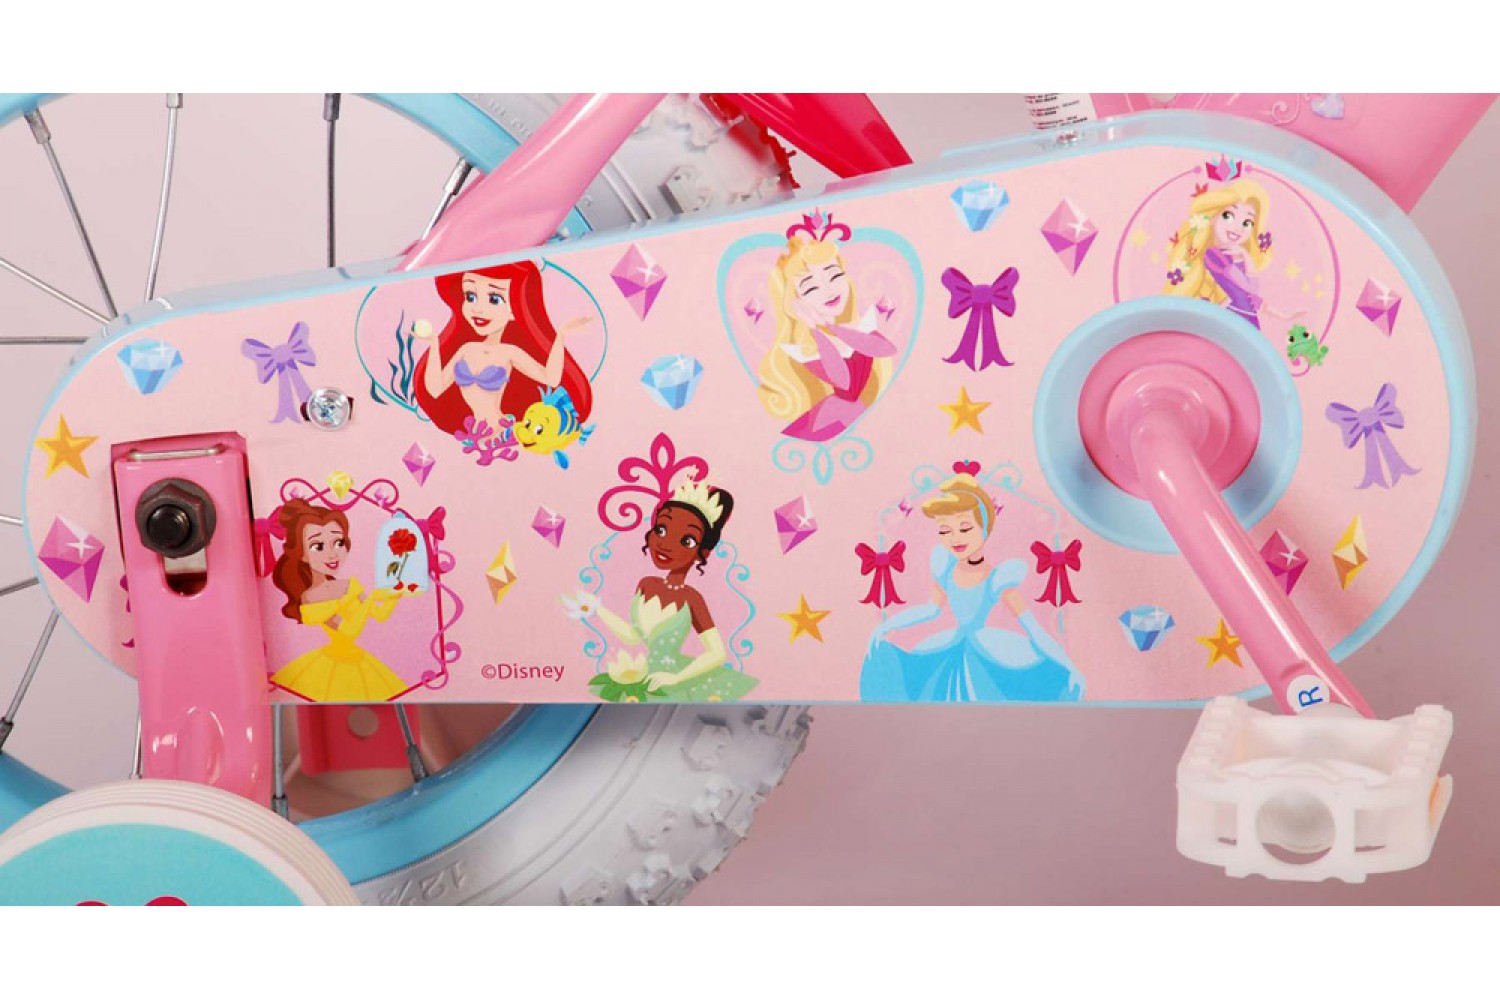 Disney Princess Kinderfiets 12 inch Meisjes Roze